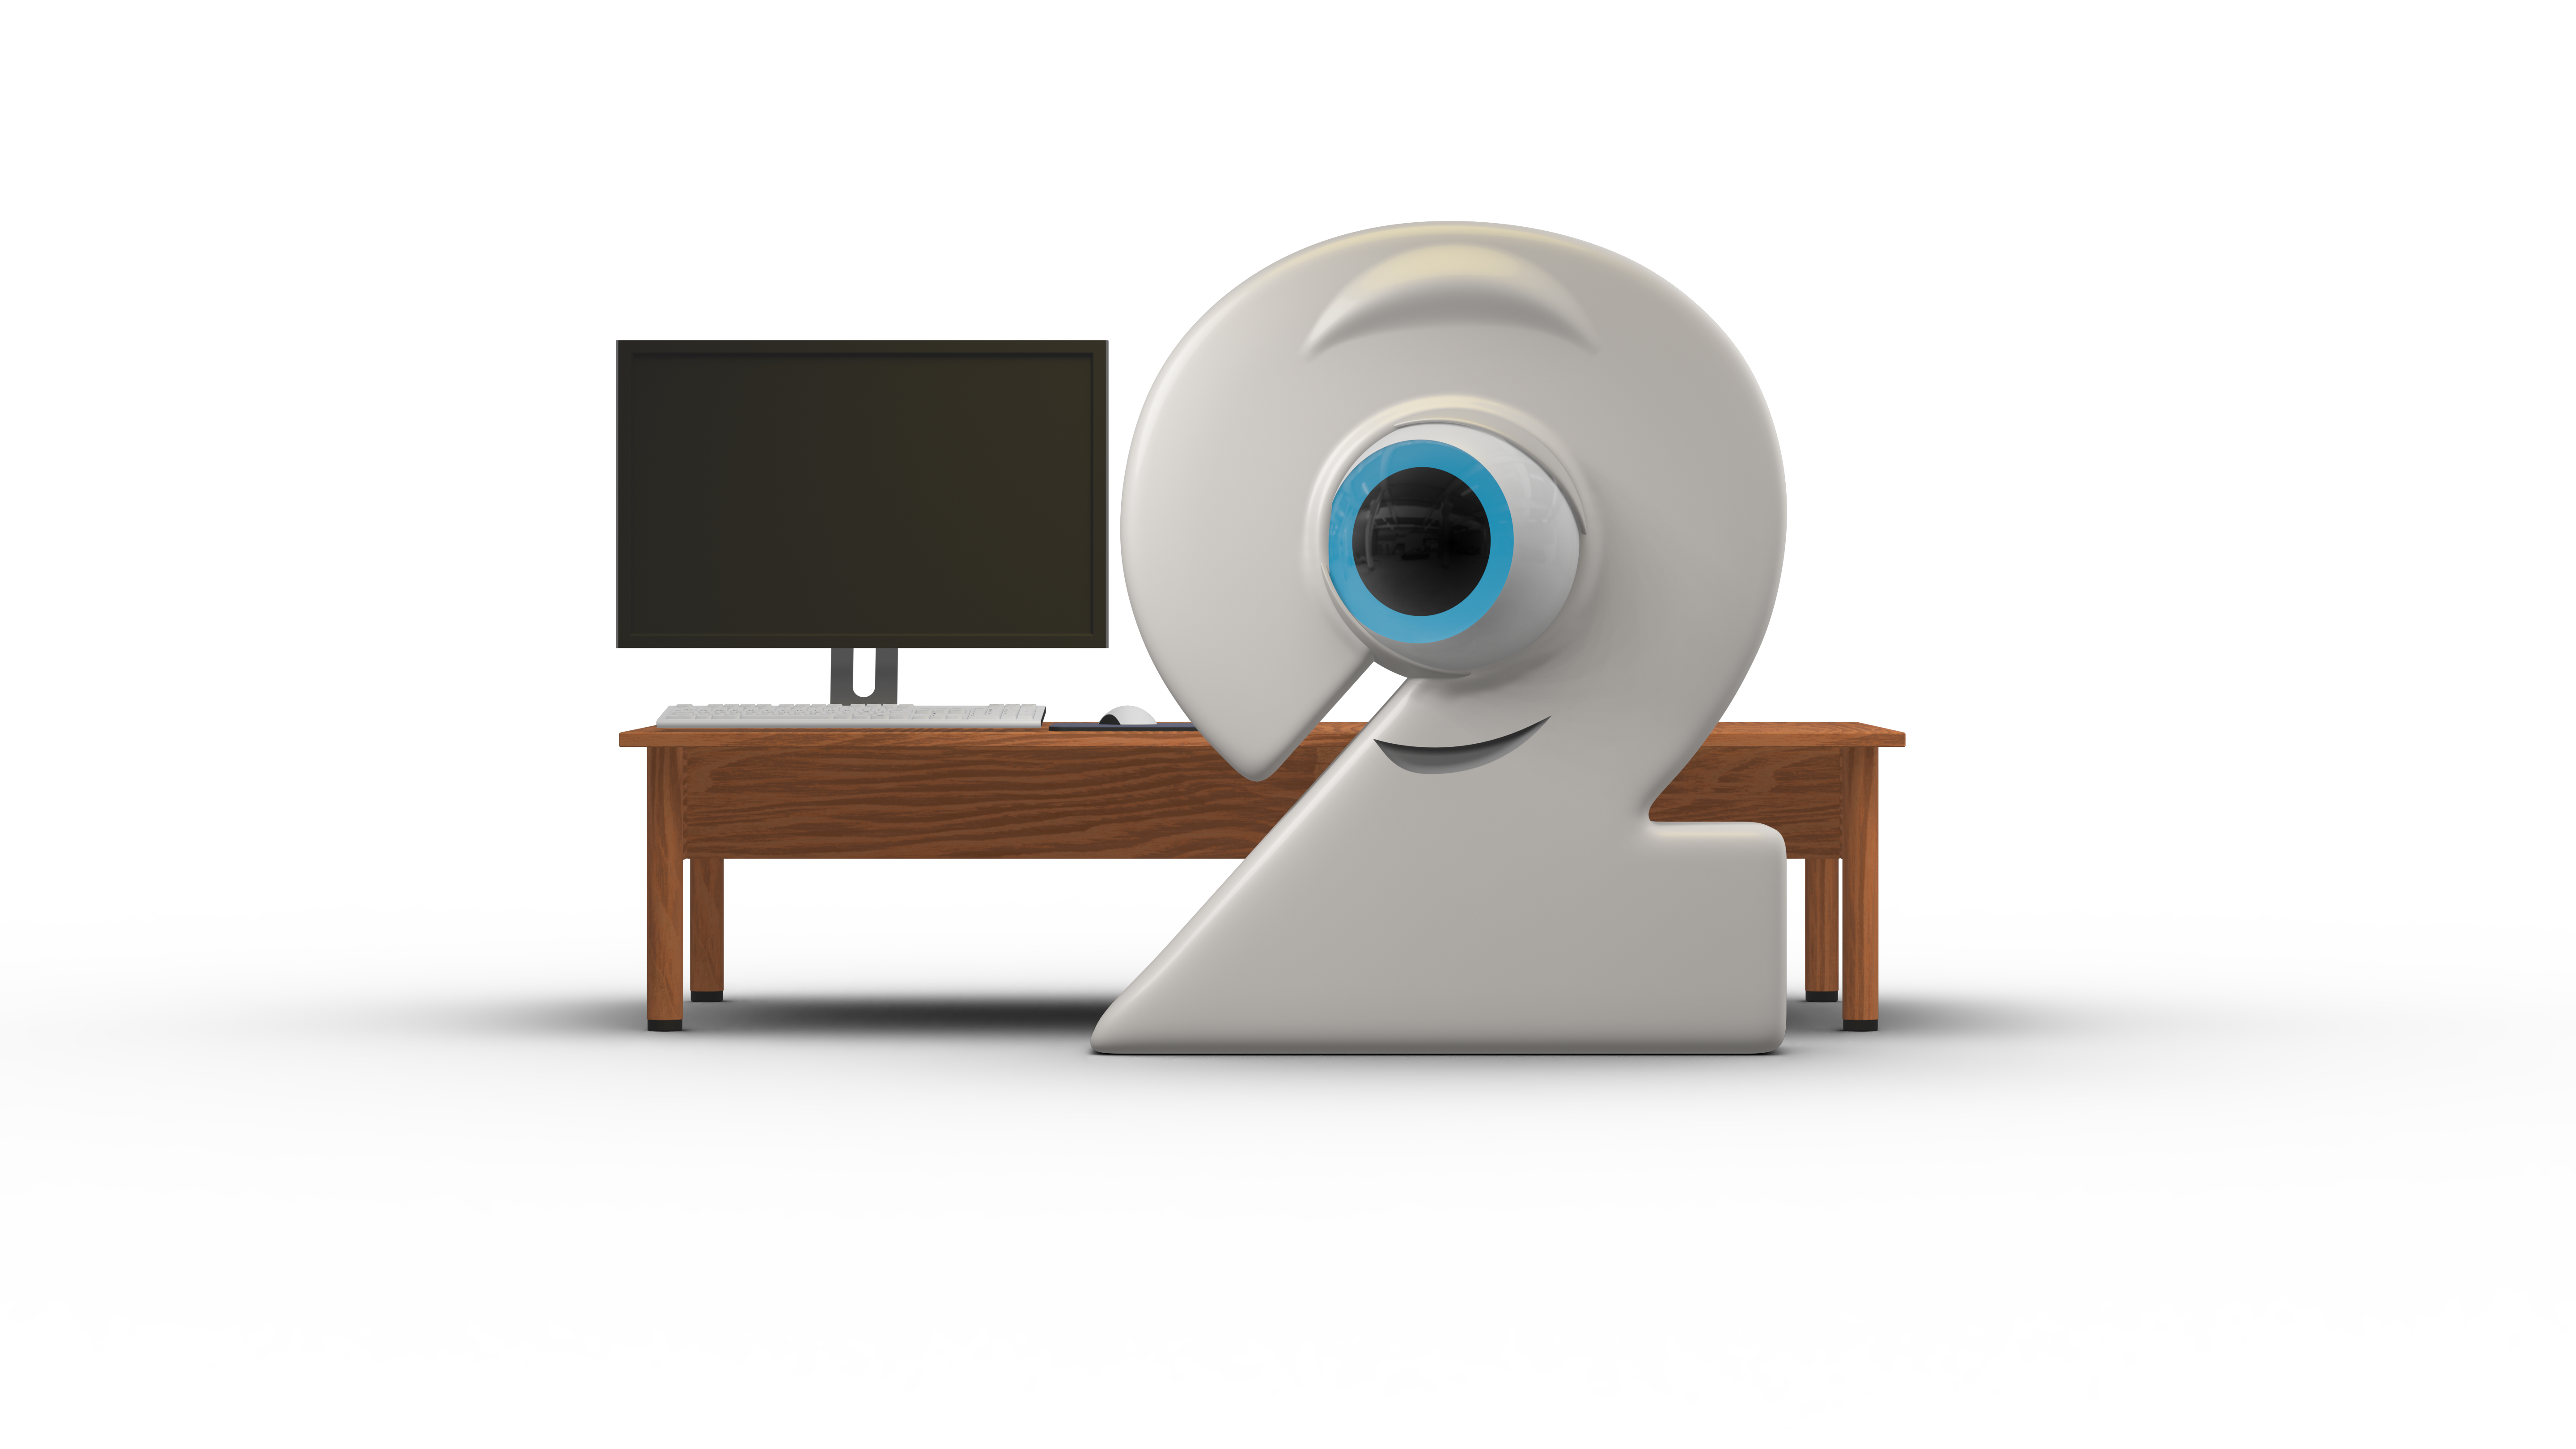 Das Maskottchen in Form einer Zwei mit großen Augen steht vor einem Schreibtisch mit Monitor.